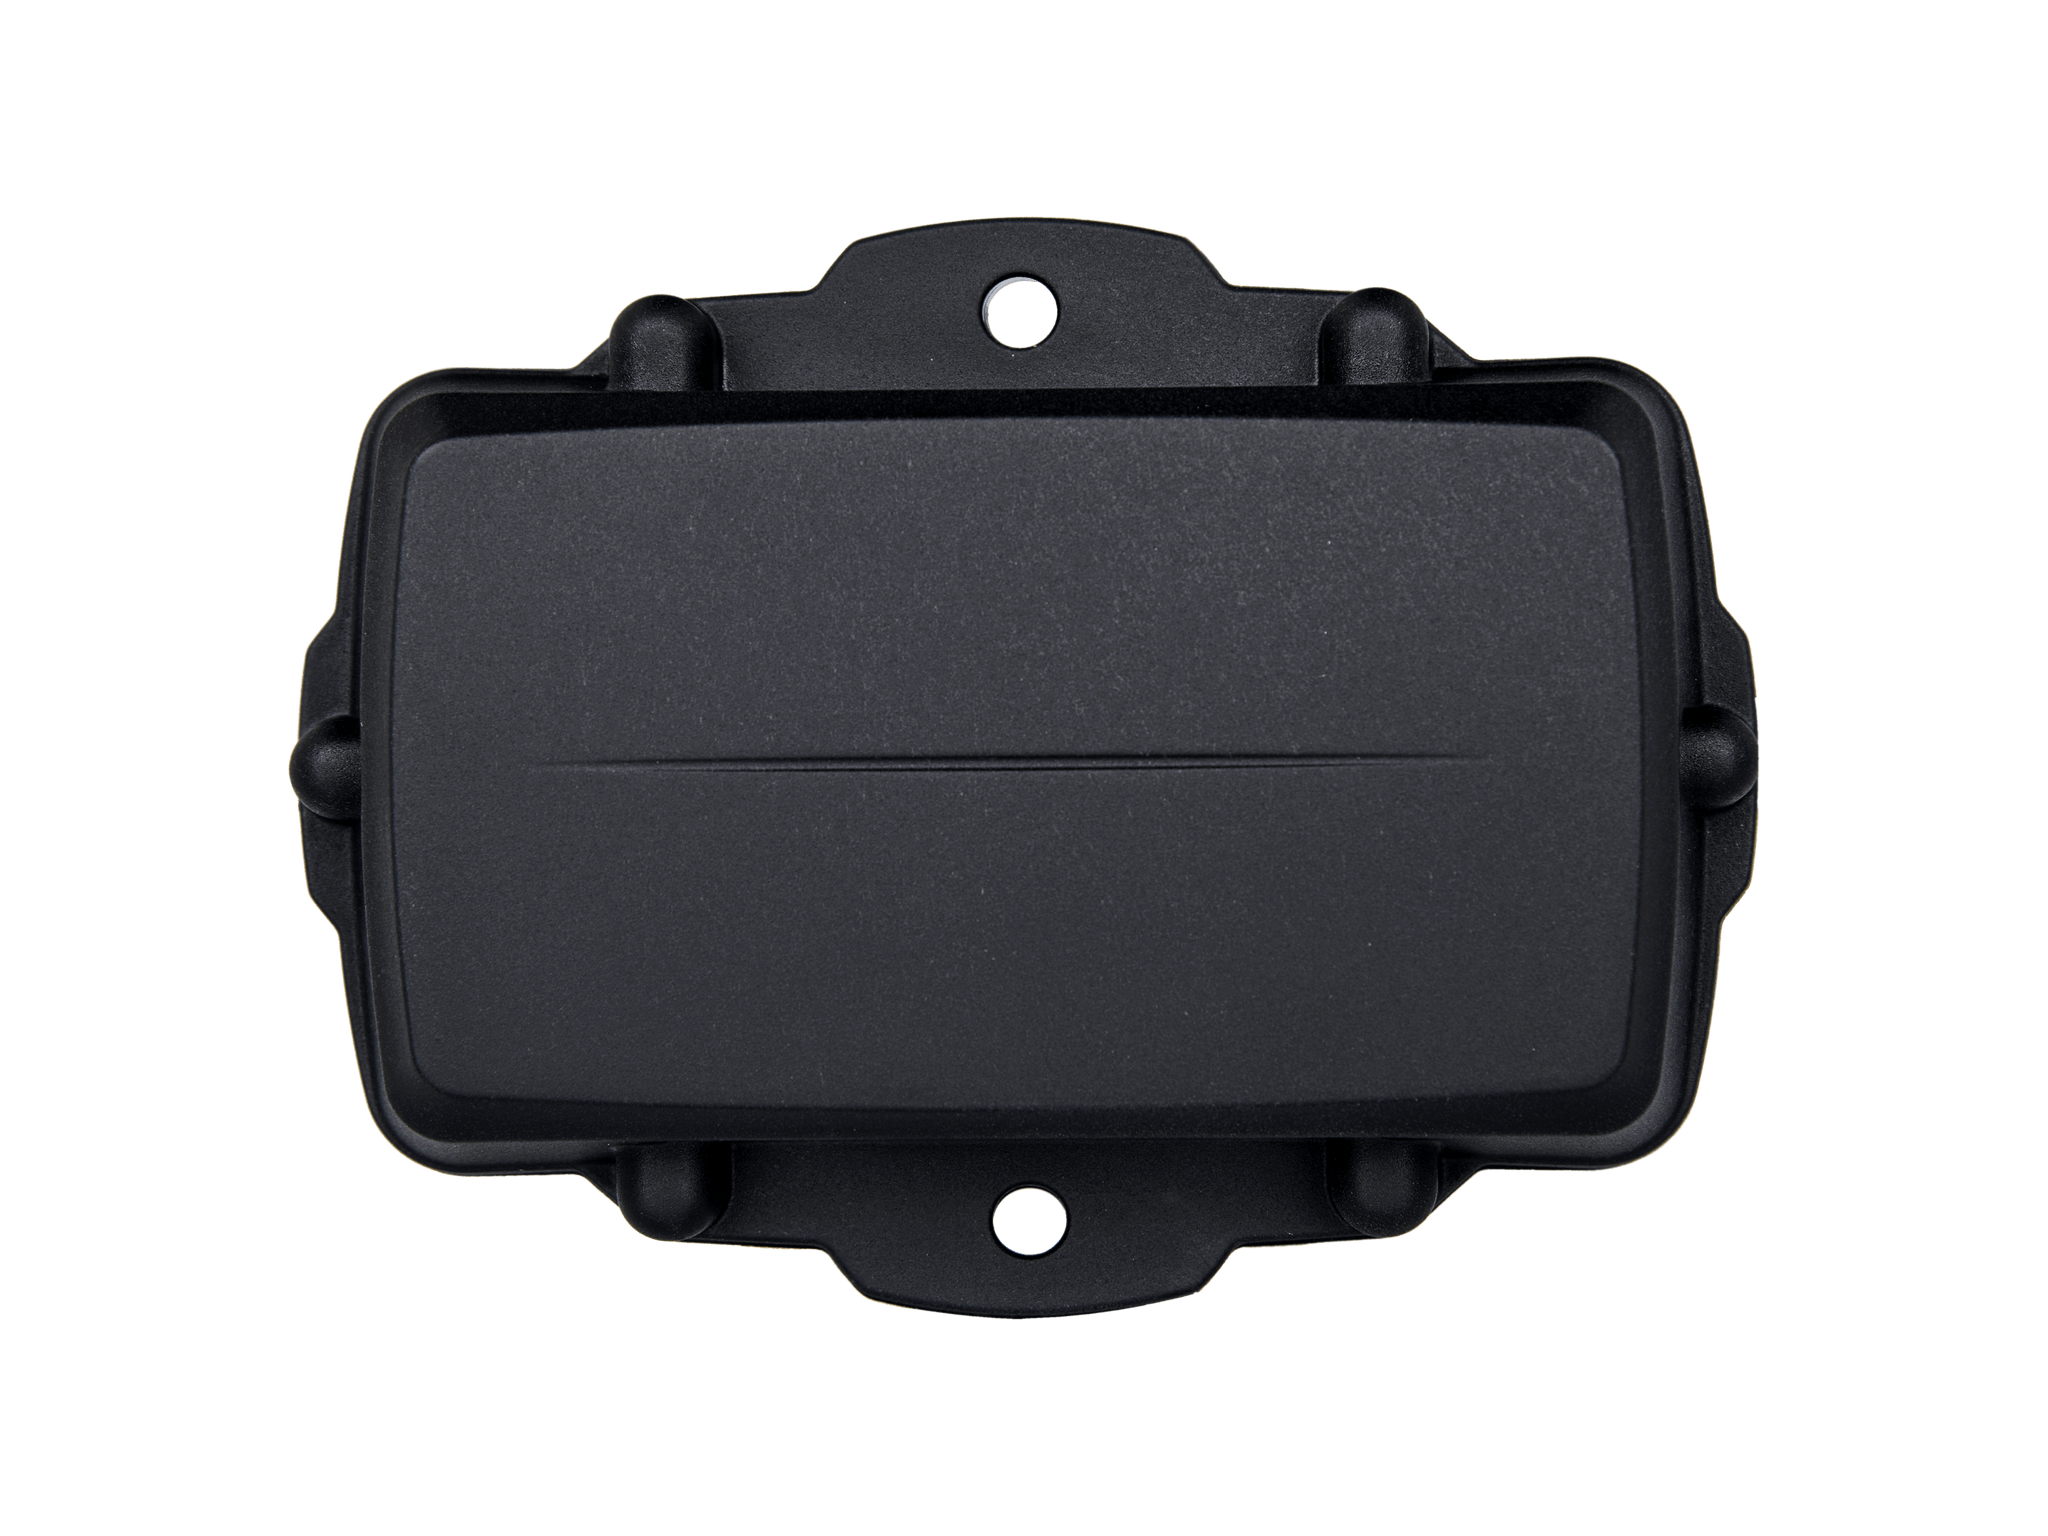 IQGT-L GPS Tracker LoRaWAN Waterproof Battery-Powered